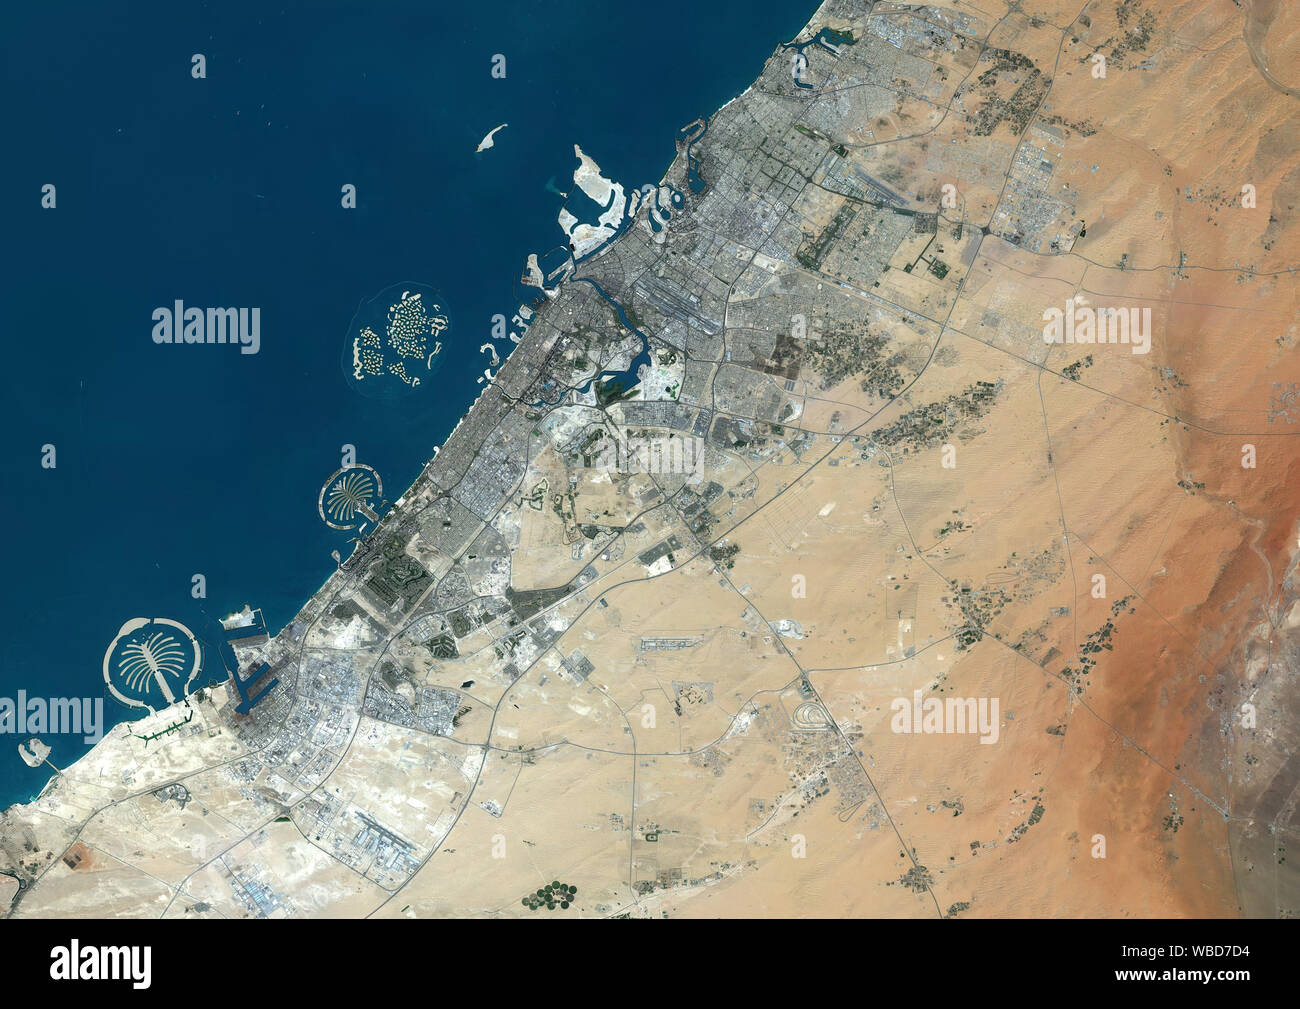 Imagen de satélite de color de Dubai, Emiratos Árabes Unidos. La imagen muestra el Jebel Ali Palm, Palm Jumeirah y las Islas del mundo. Imagen reunidos el 11 de septiembre de 2018, por el satélite Sentinel-2. Foto de stock